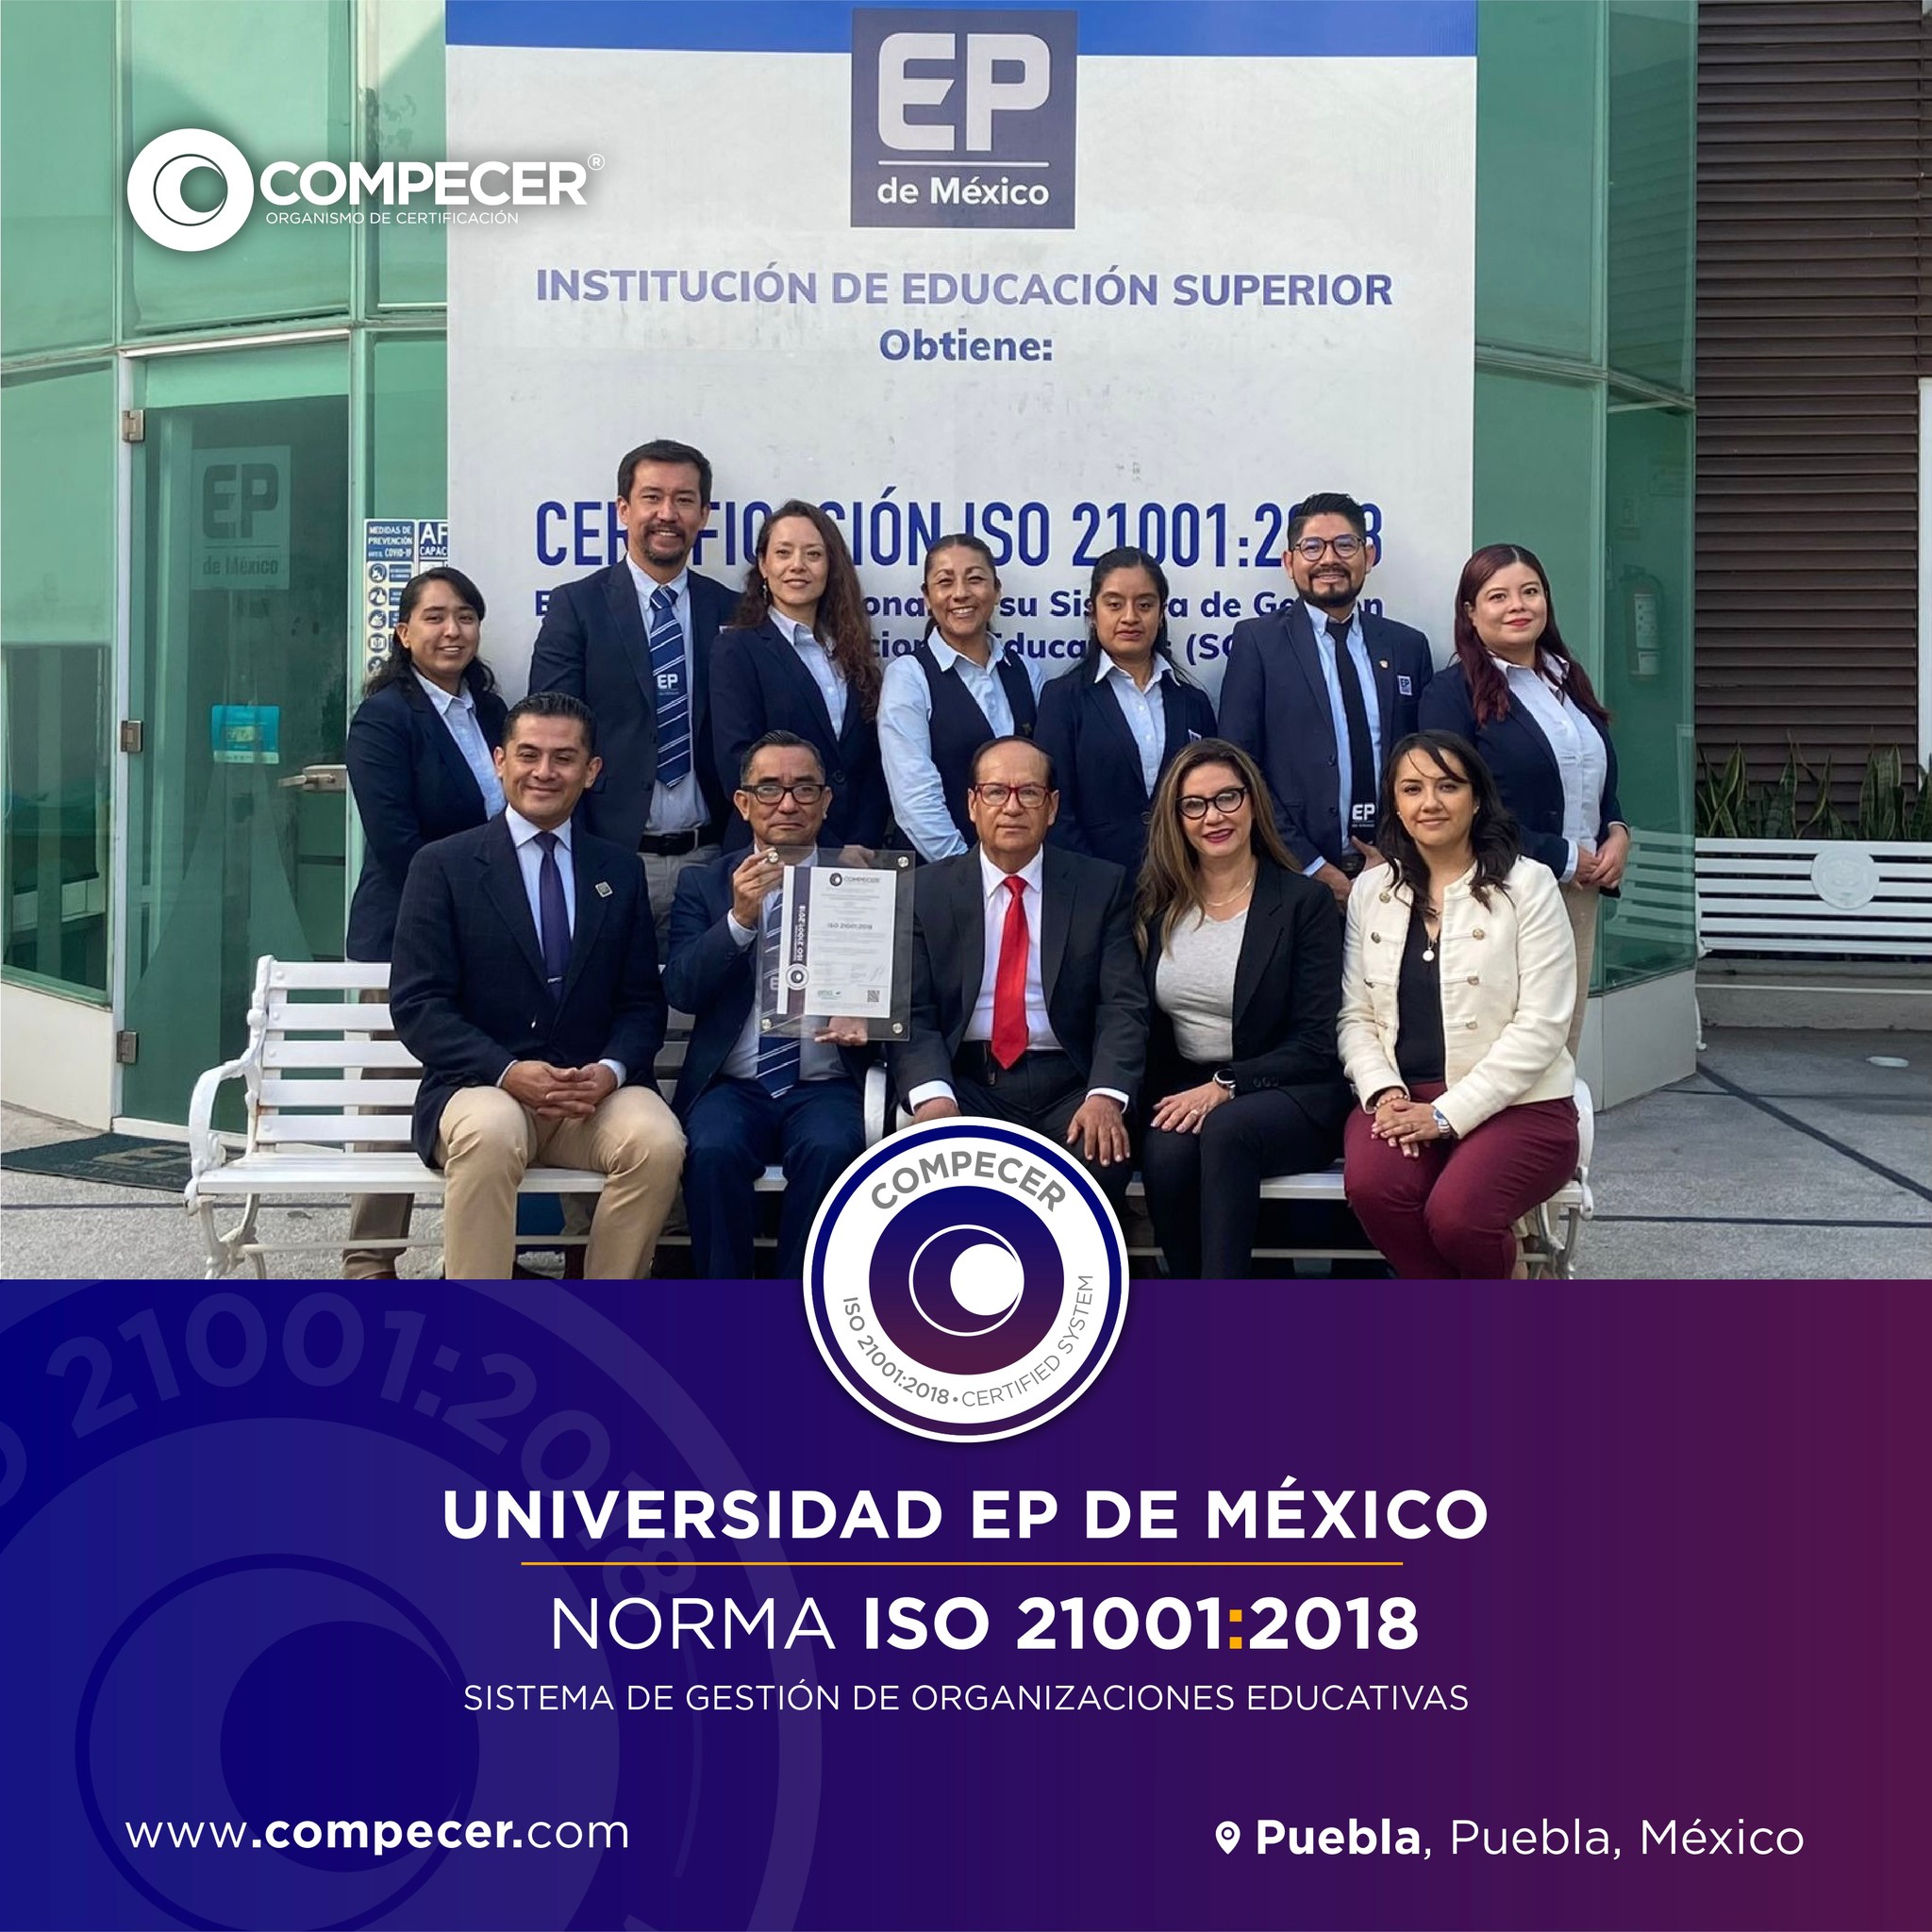 Universidad EP de México